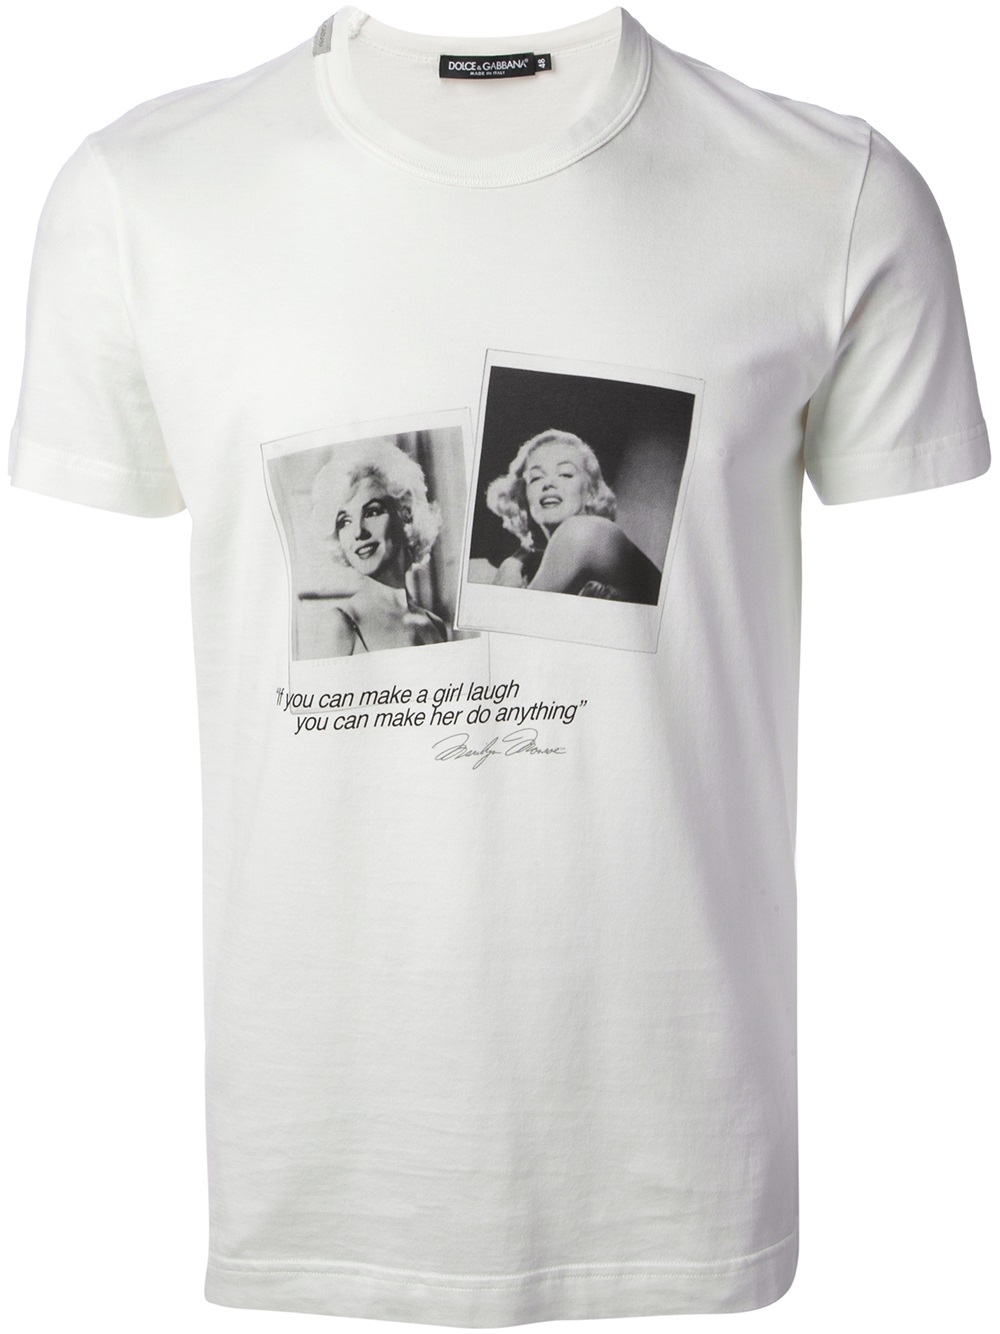 Dolce & Gabbana Marilyn Monroe Tshirt in White for Men - Lyst